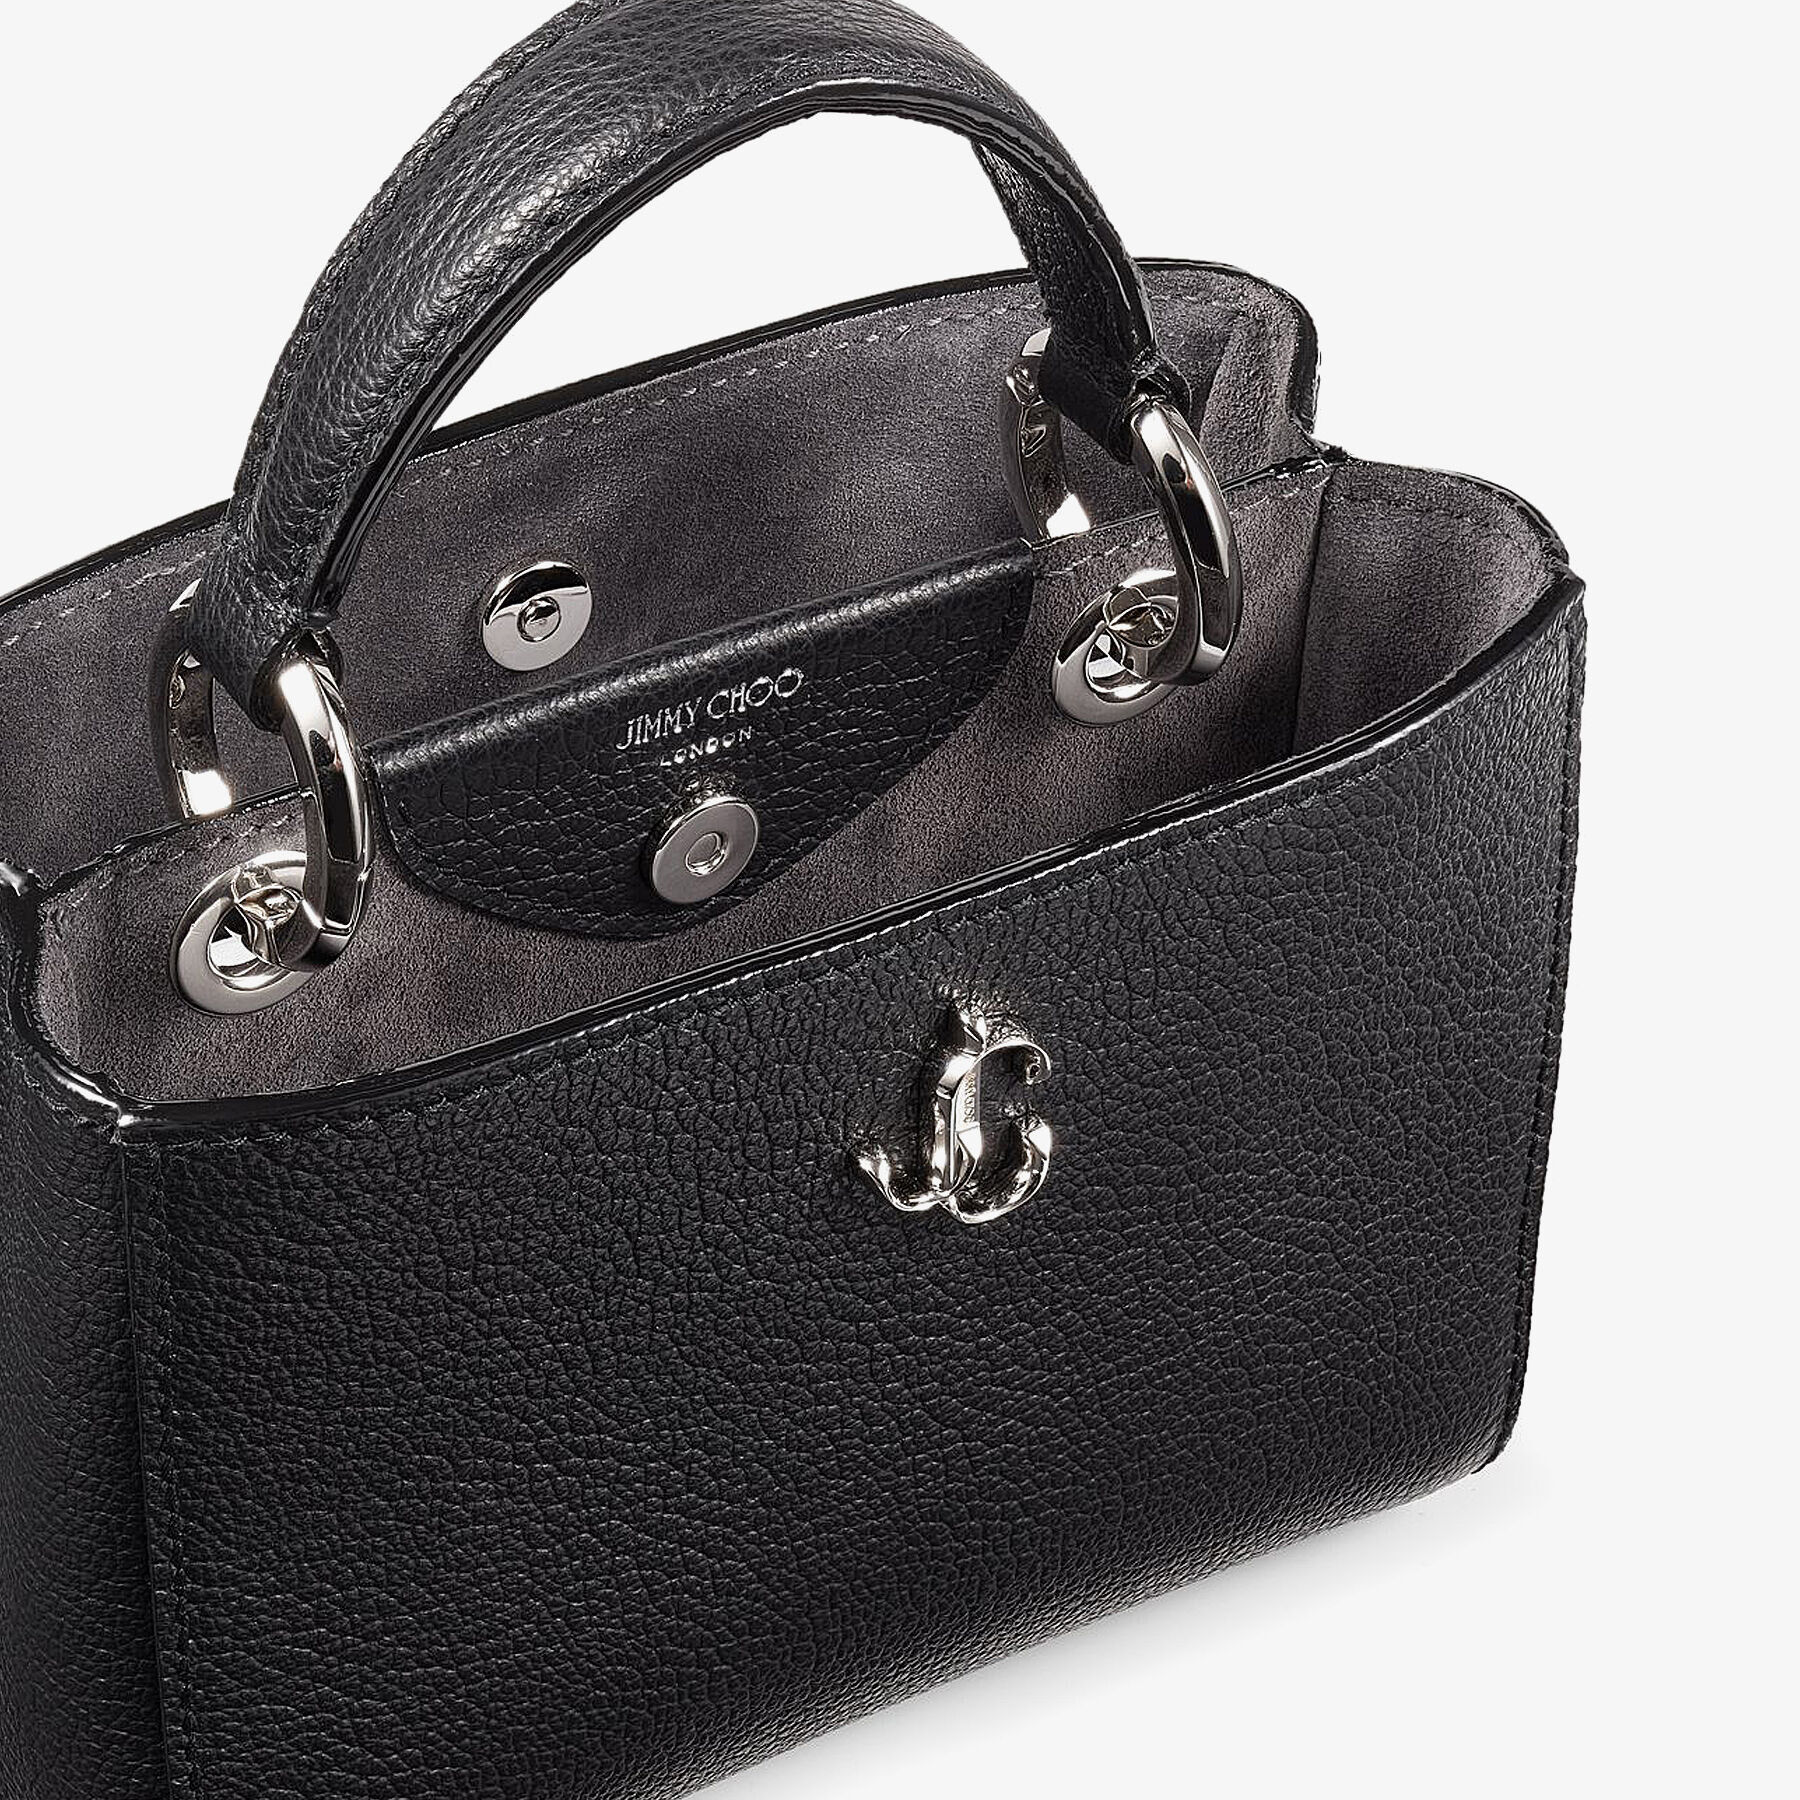 Black City Grainy Calf Leather Mini Handbag | VARENNE TOPHNDL MINI 